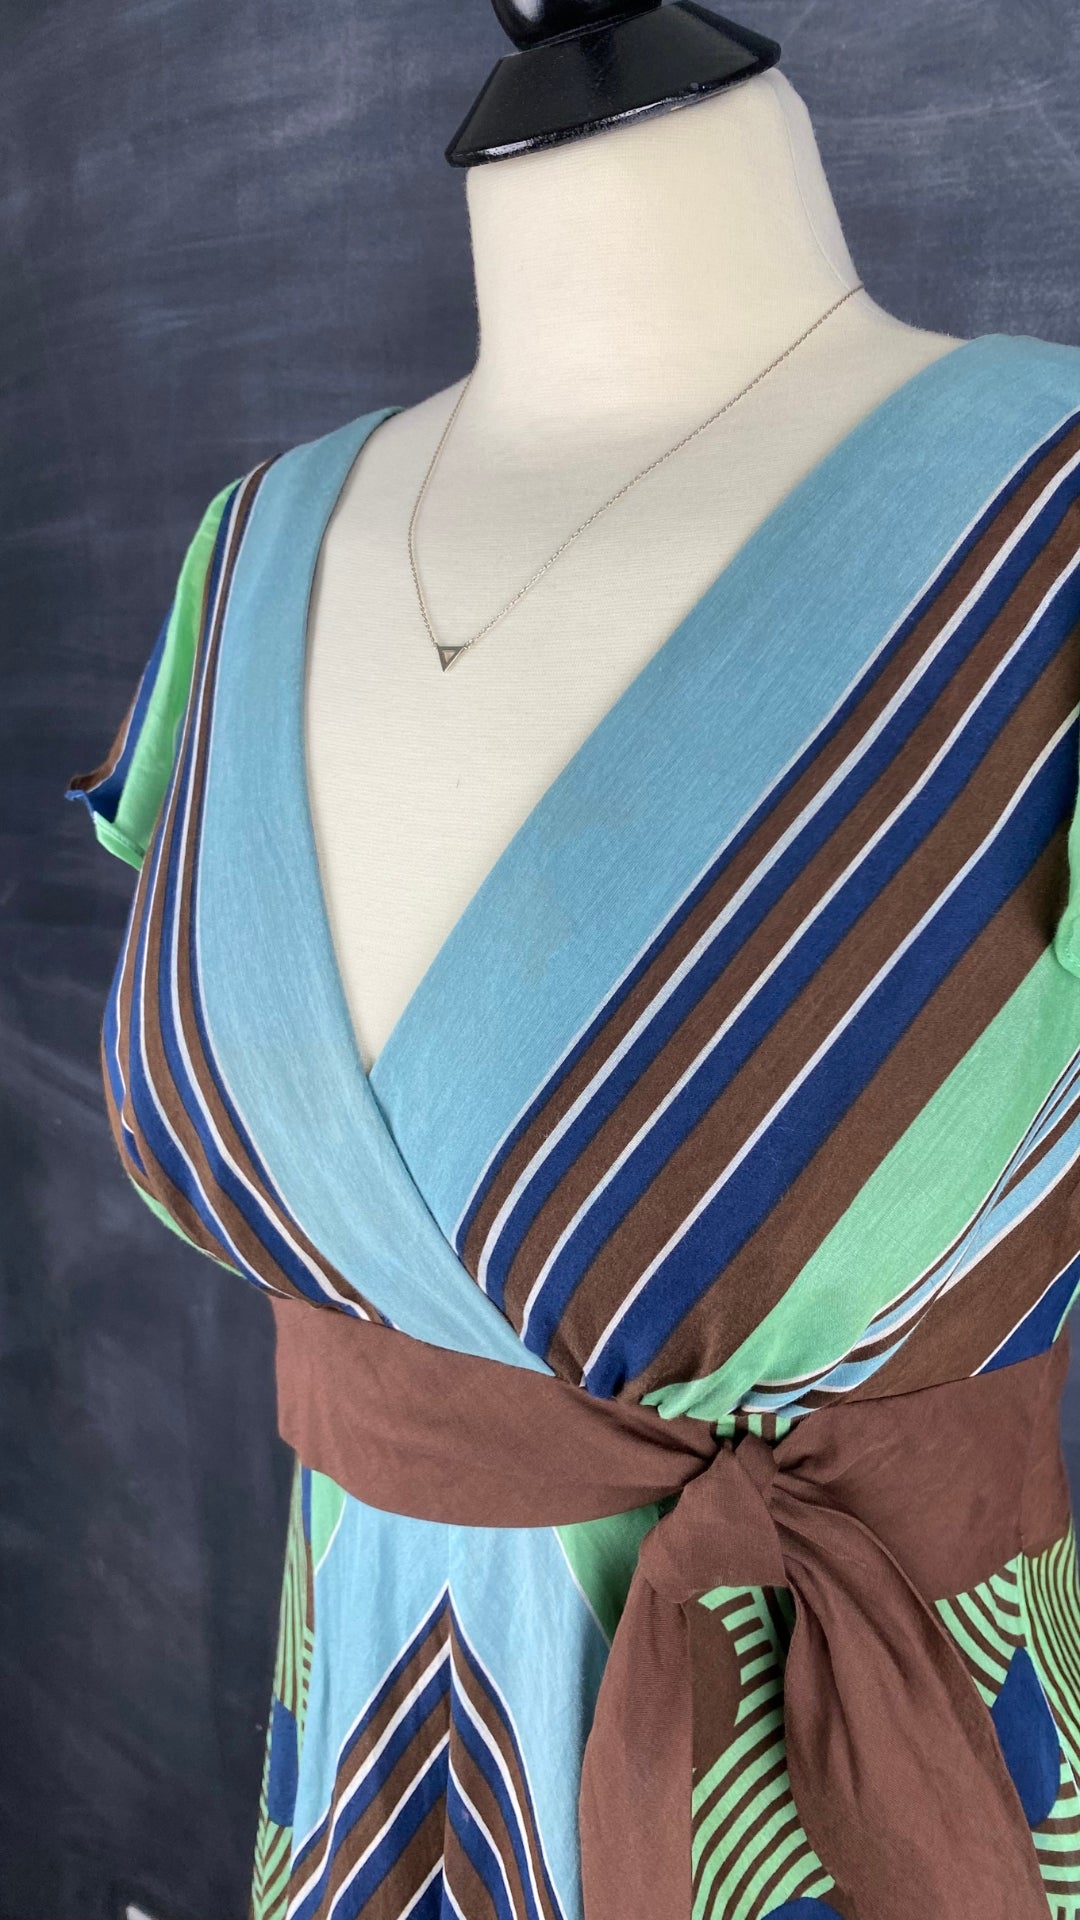 Robe à rayures et motifs géo en soie et coton BCBG Max Azria, taille 6. Vue de l'encolure.